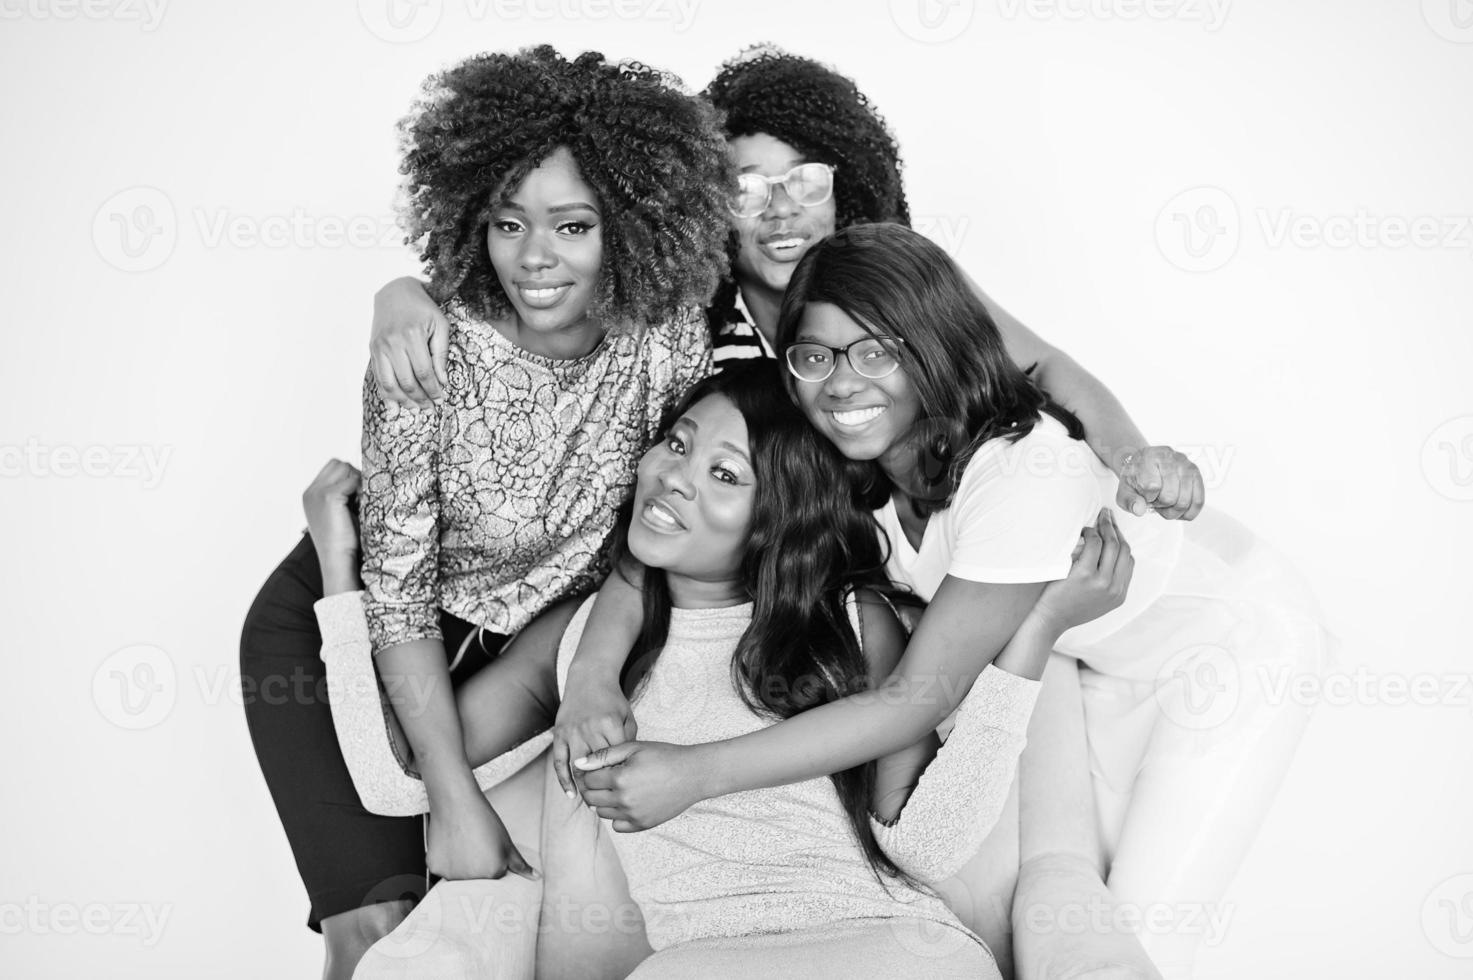 felizes momentos positivos brilhantes de quatro meninas africanas. se divertindo e sorrindo na cadeira contra a parede branca vazia. adoráveis momentos de quatro melhores amigos abraçados. foto